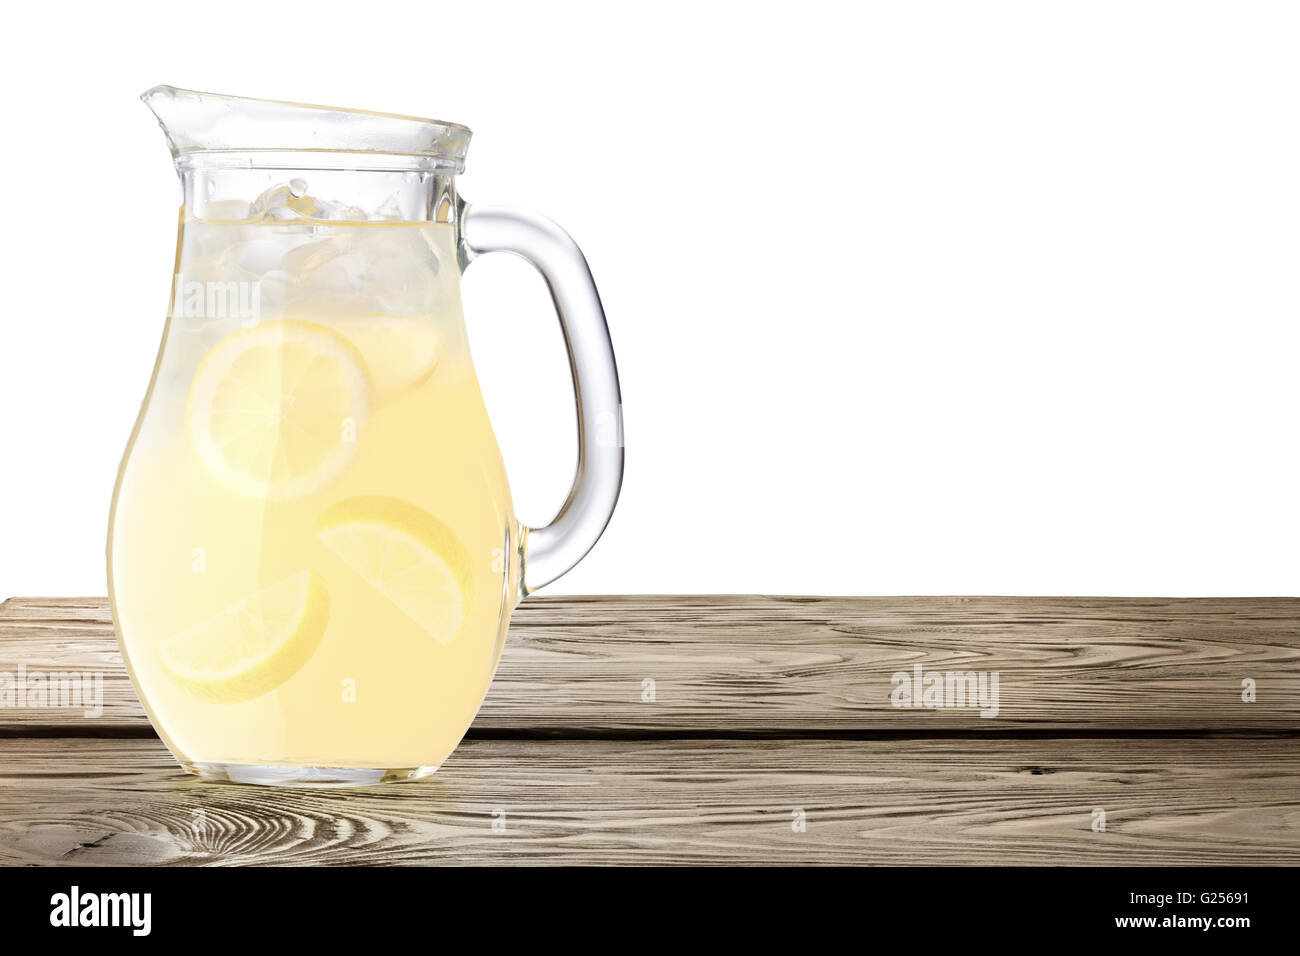 Lemonade pitcher seul sur table en bois. Chemins de détourage, l'infinie profondeur de champ Banque D'Images